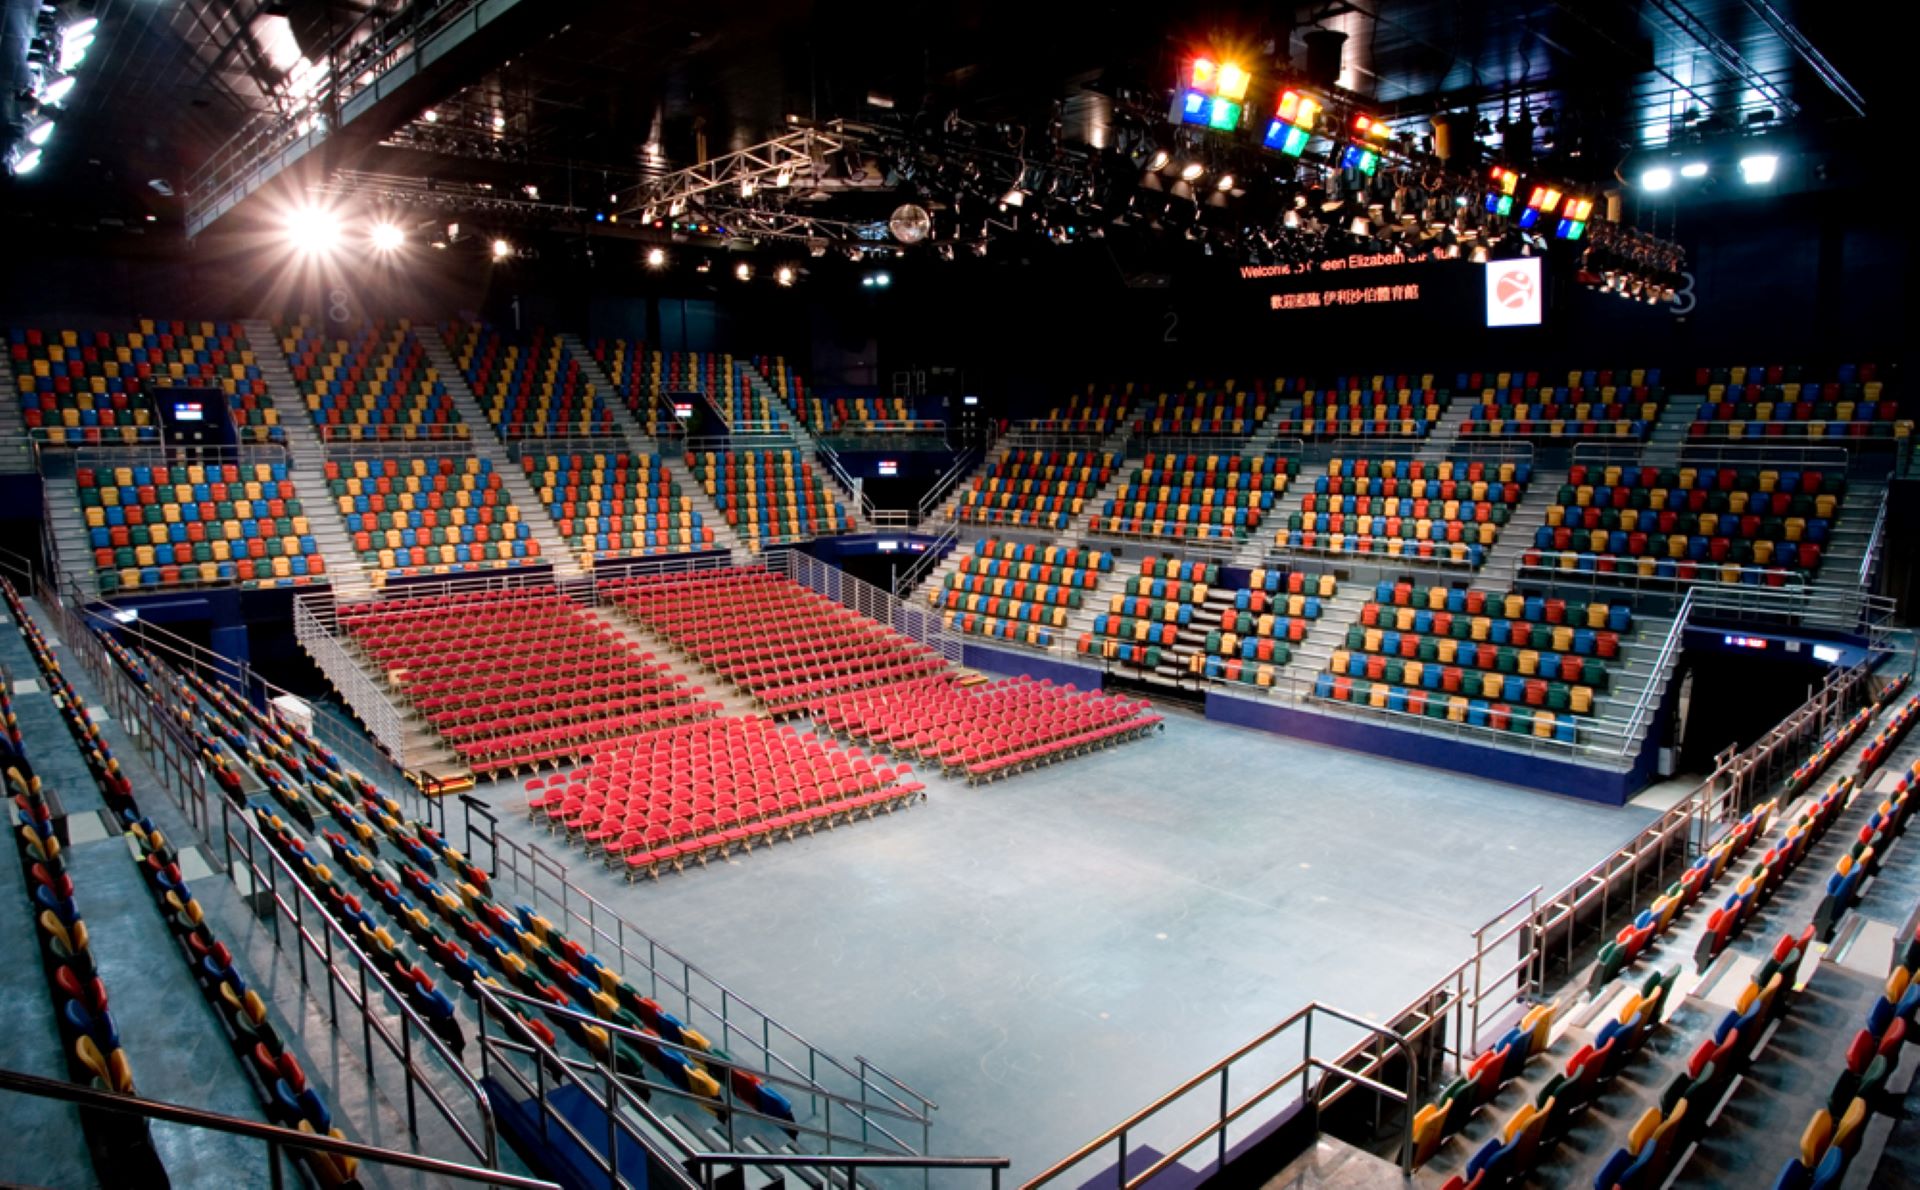 The arena at Queen Elizabeth Stadium.